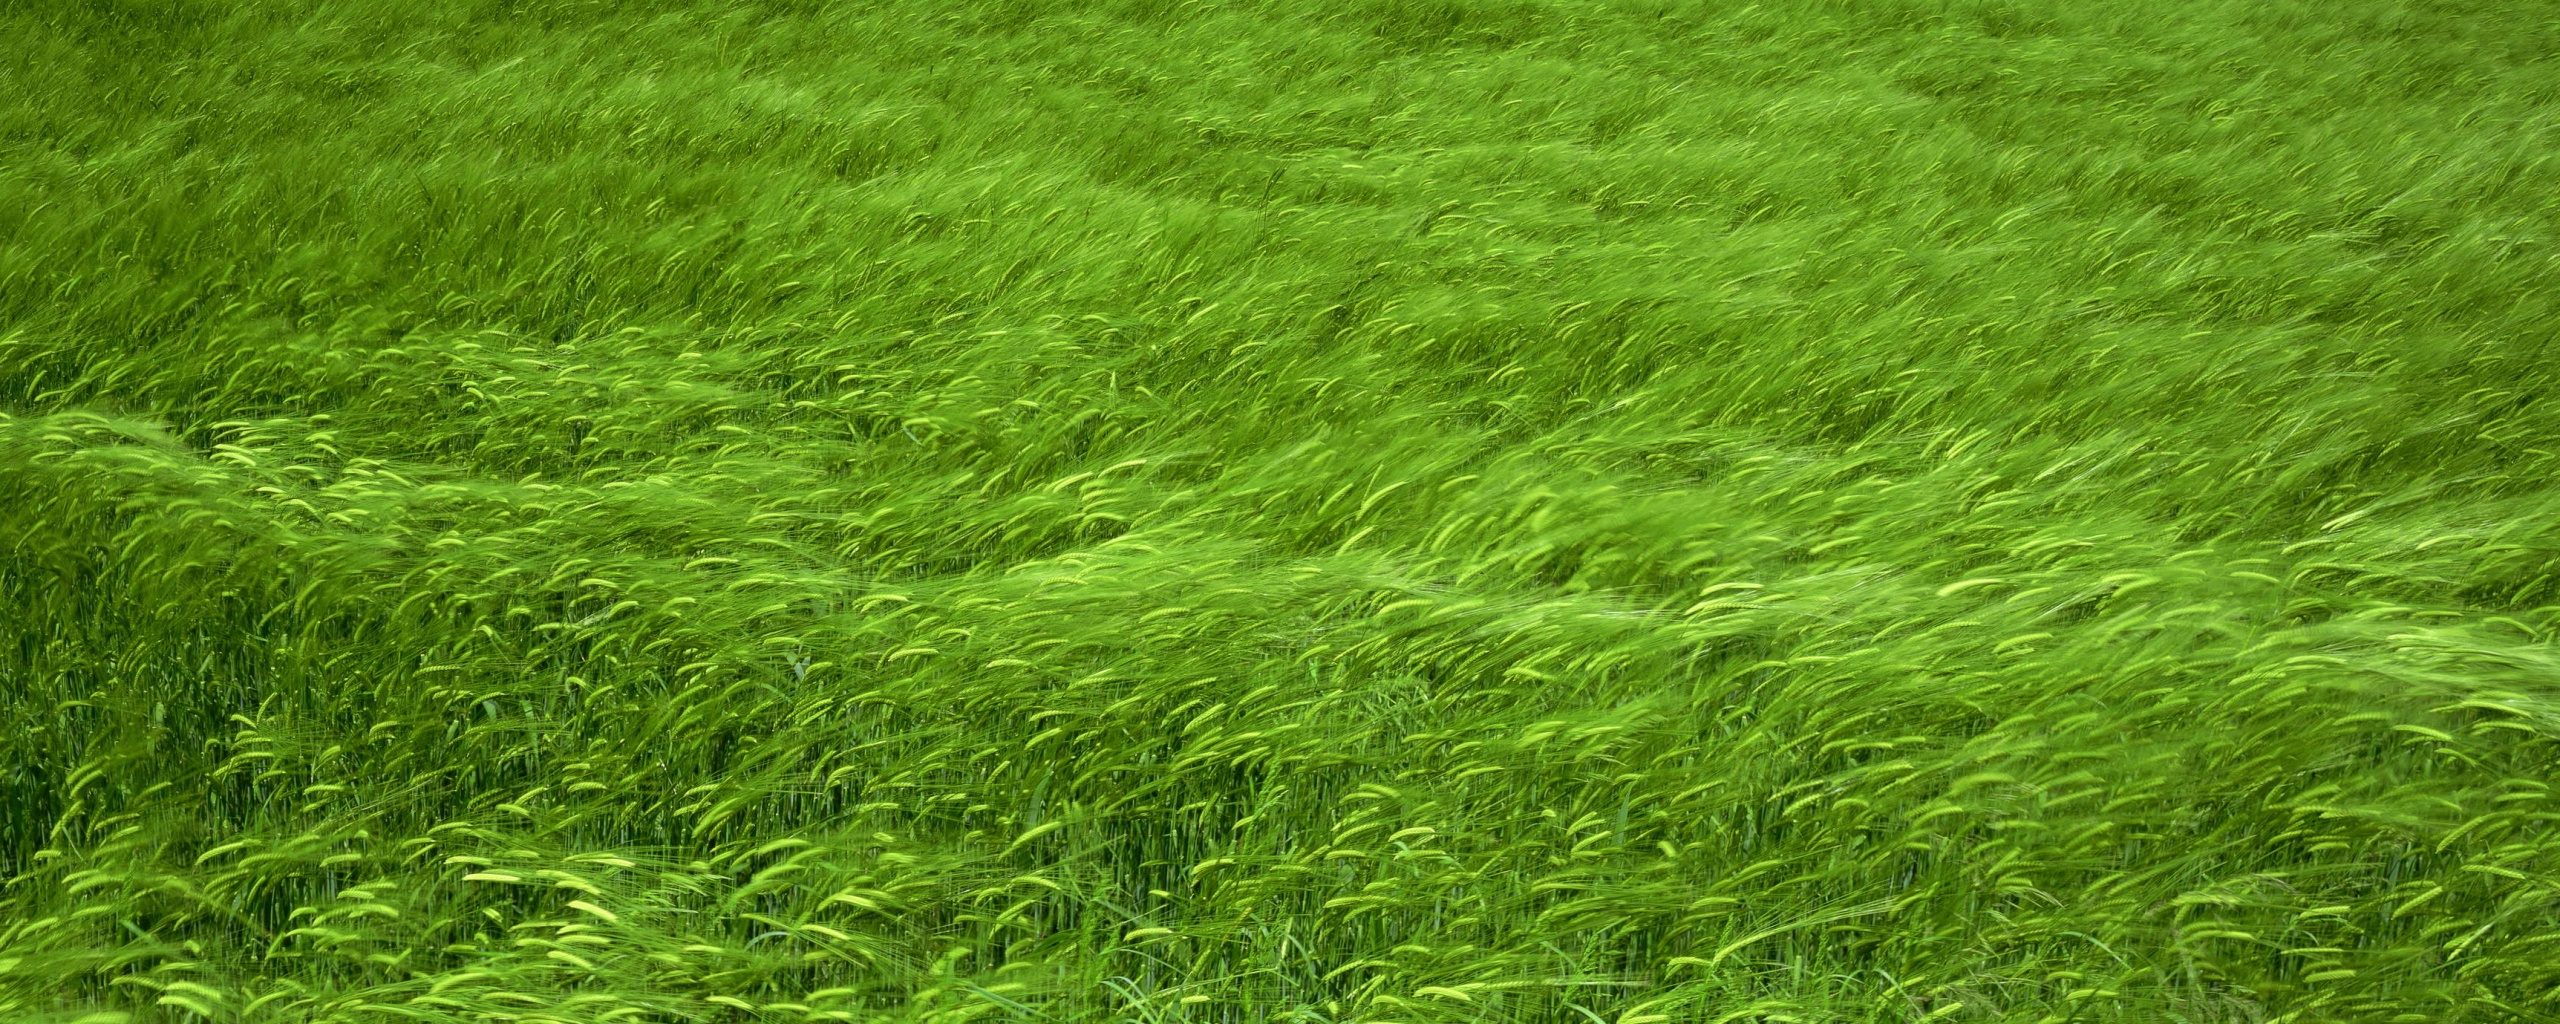 Колышущаяся трава обои, картинки, фото